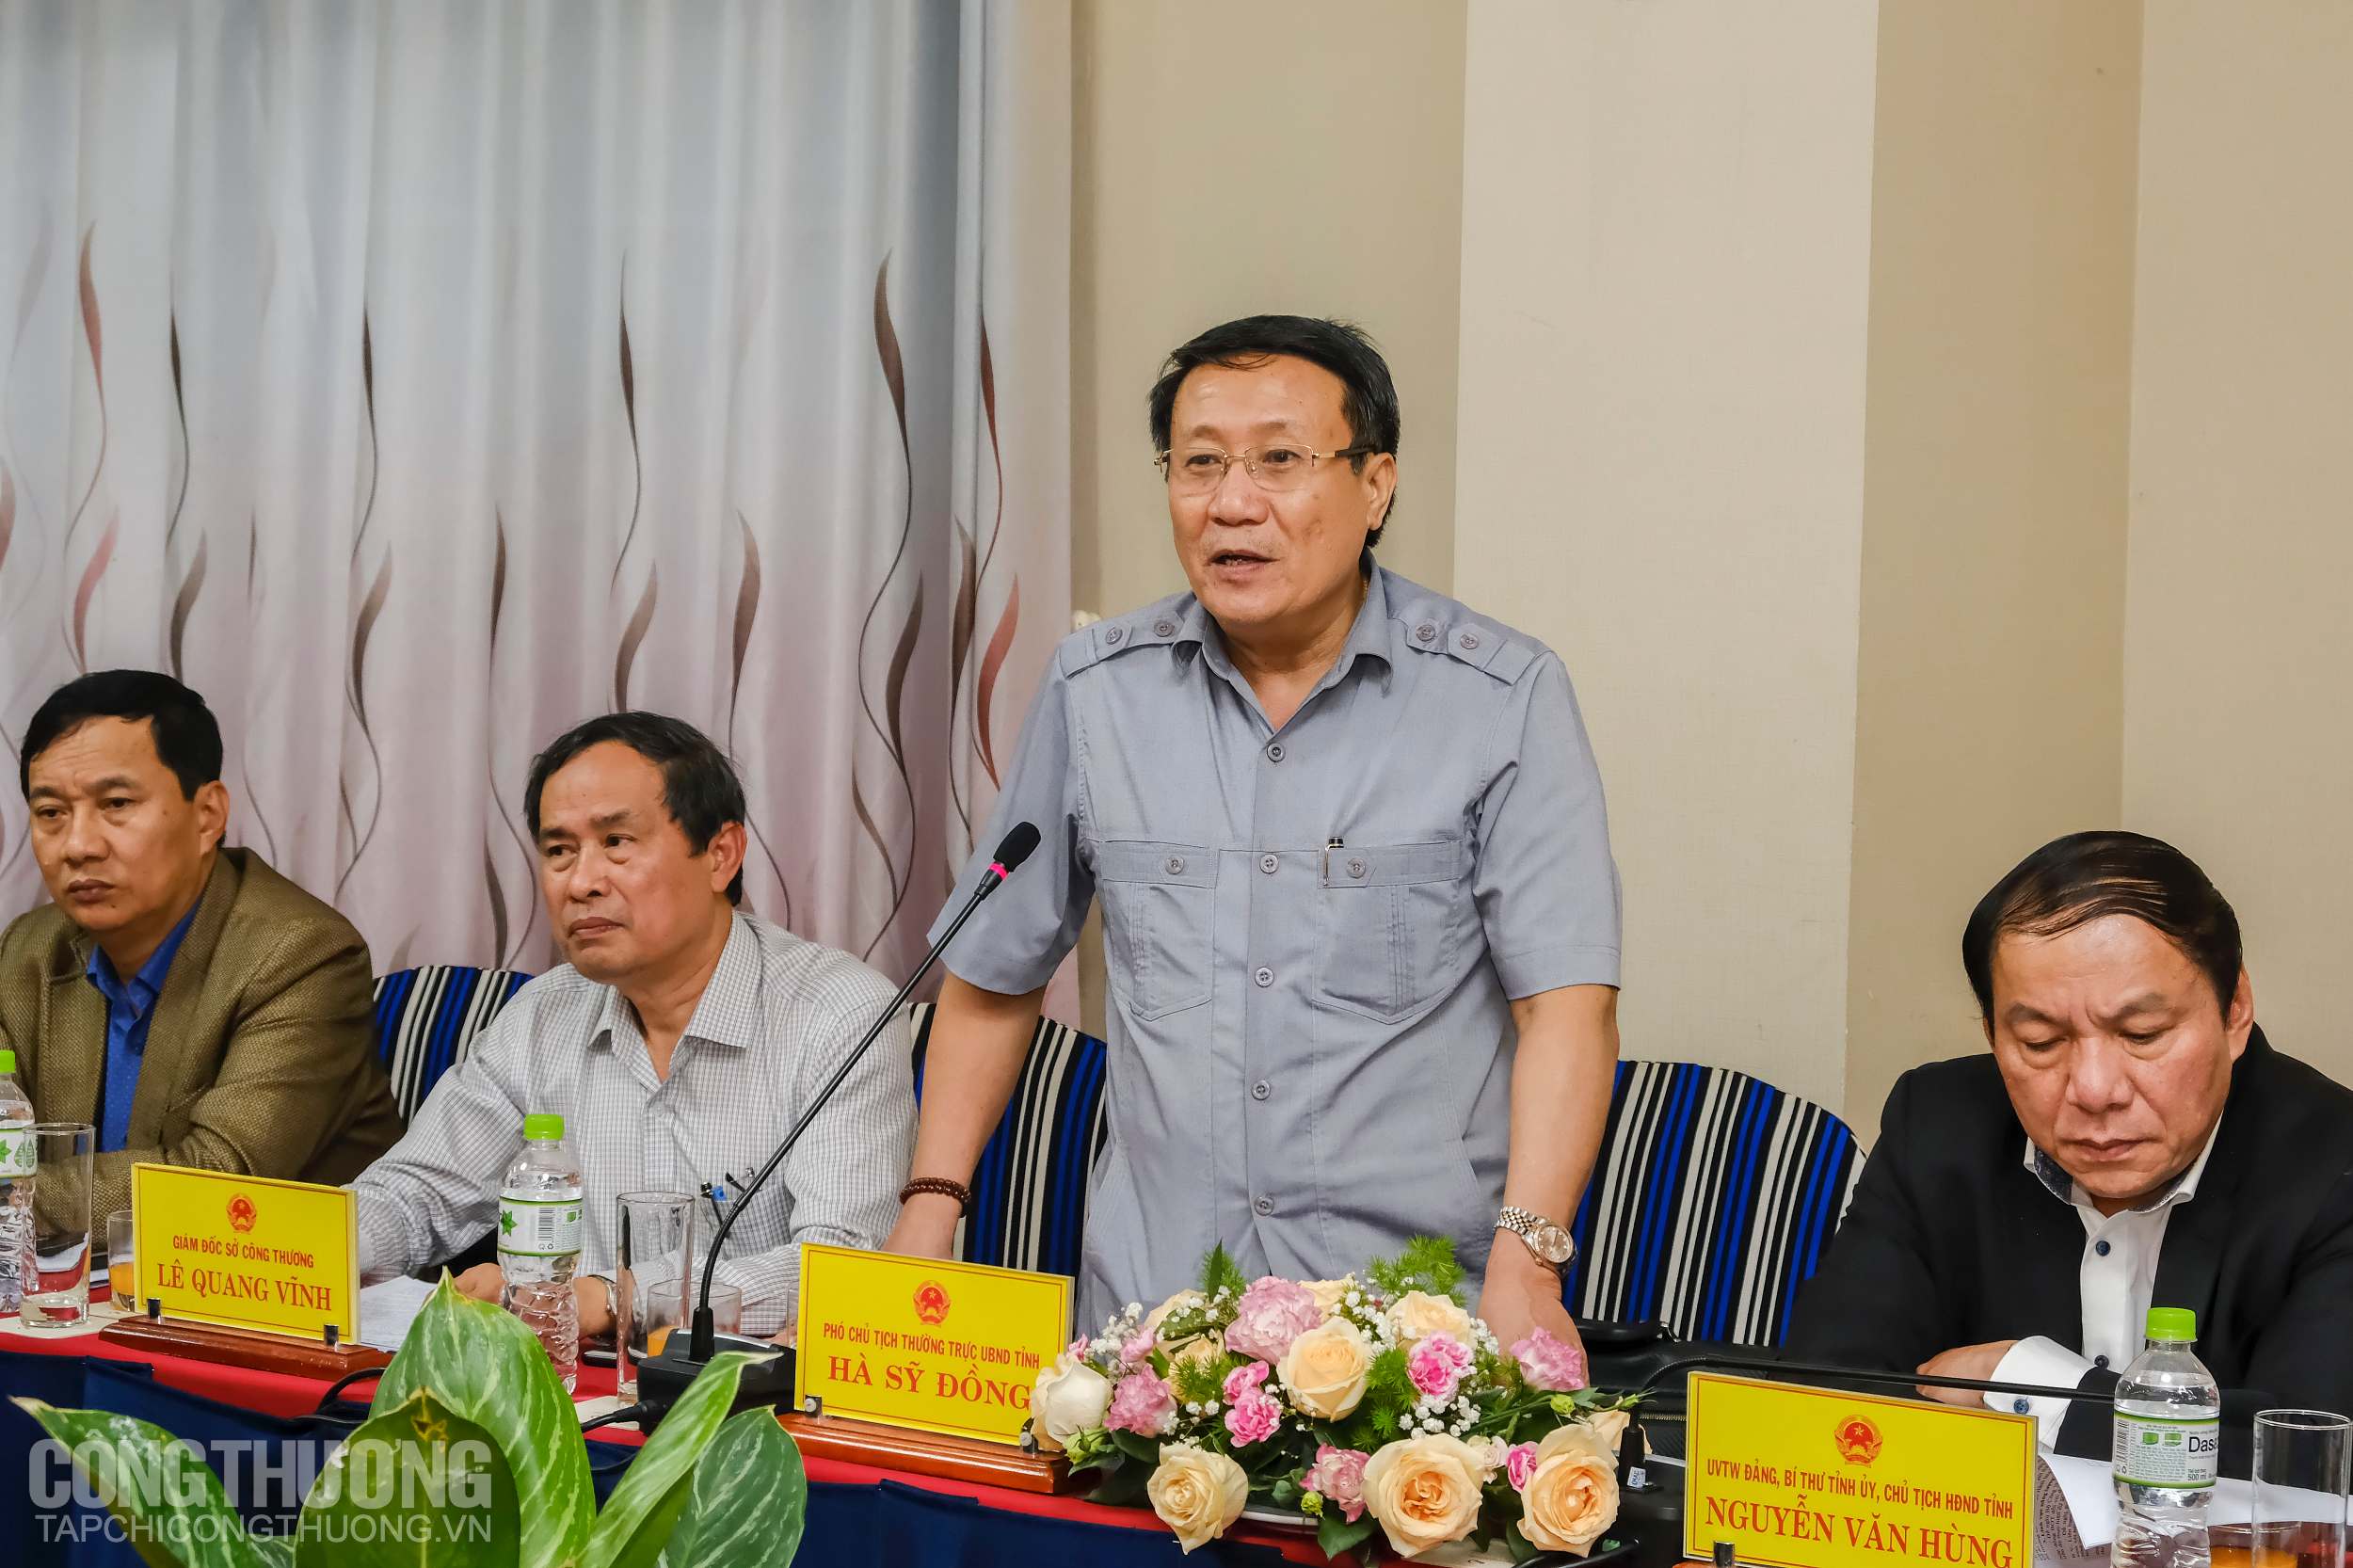 Phó Chủ tịch thường trực UBND Quảng Trị Hà Sỹ Đồng hy vọng Bộ Công Thương tiếp tục ủng hộ và hỗ trợ tỉnh về phát triển công nghiệp, thương mại